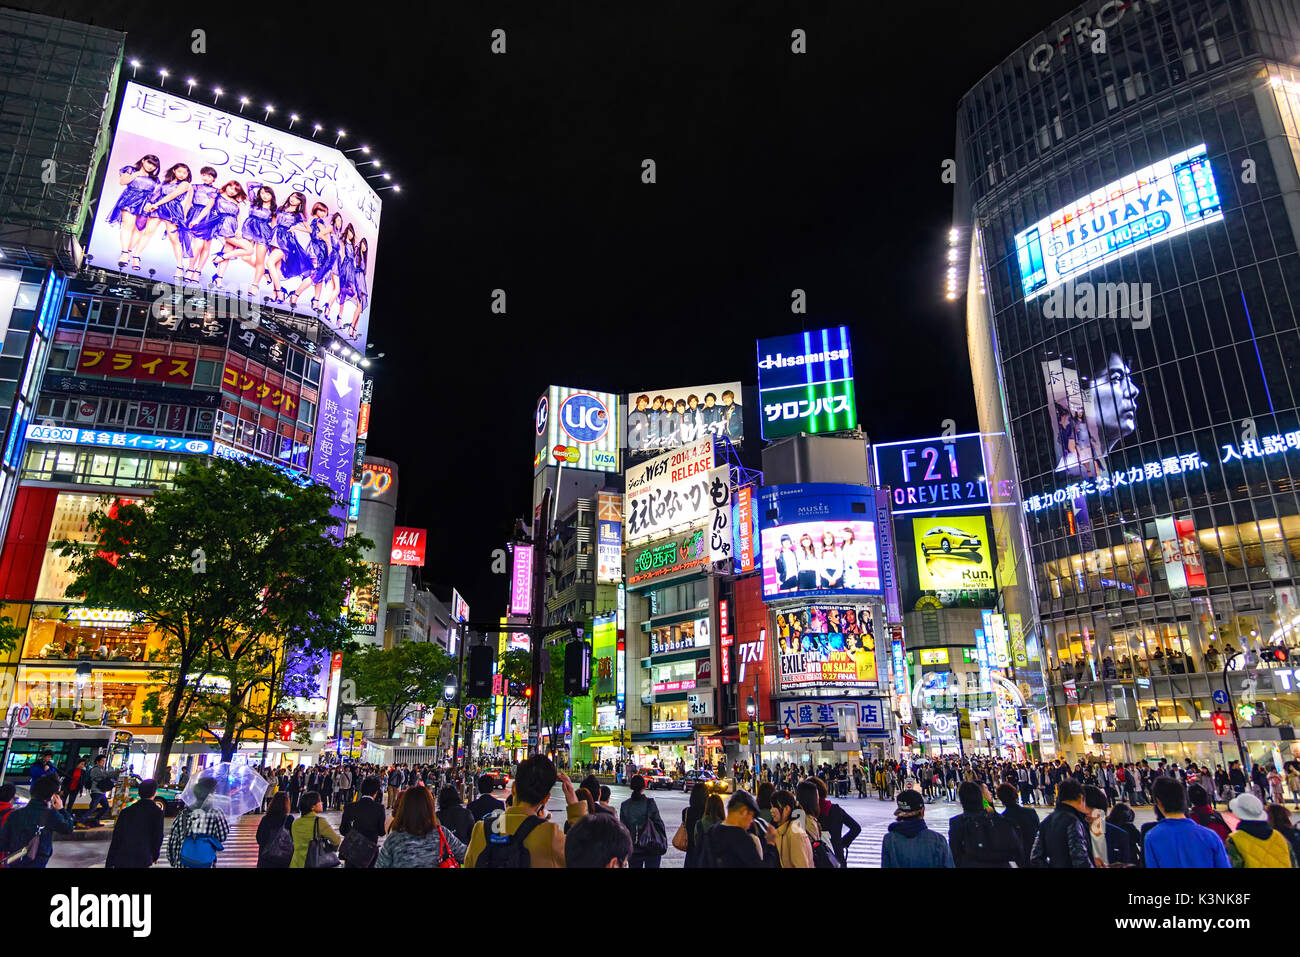 Tokyo, Giappone - 21 aprile 2014: vista del quartiere Shibuya di notte. shibuya è conosciuto come uno dei centri della moda del Giappone Foto Stock